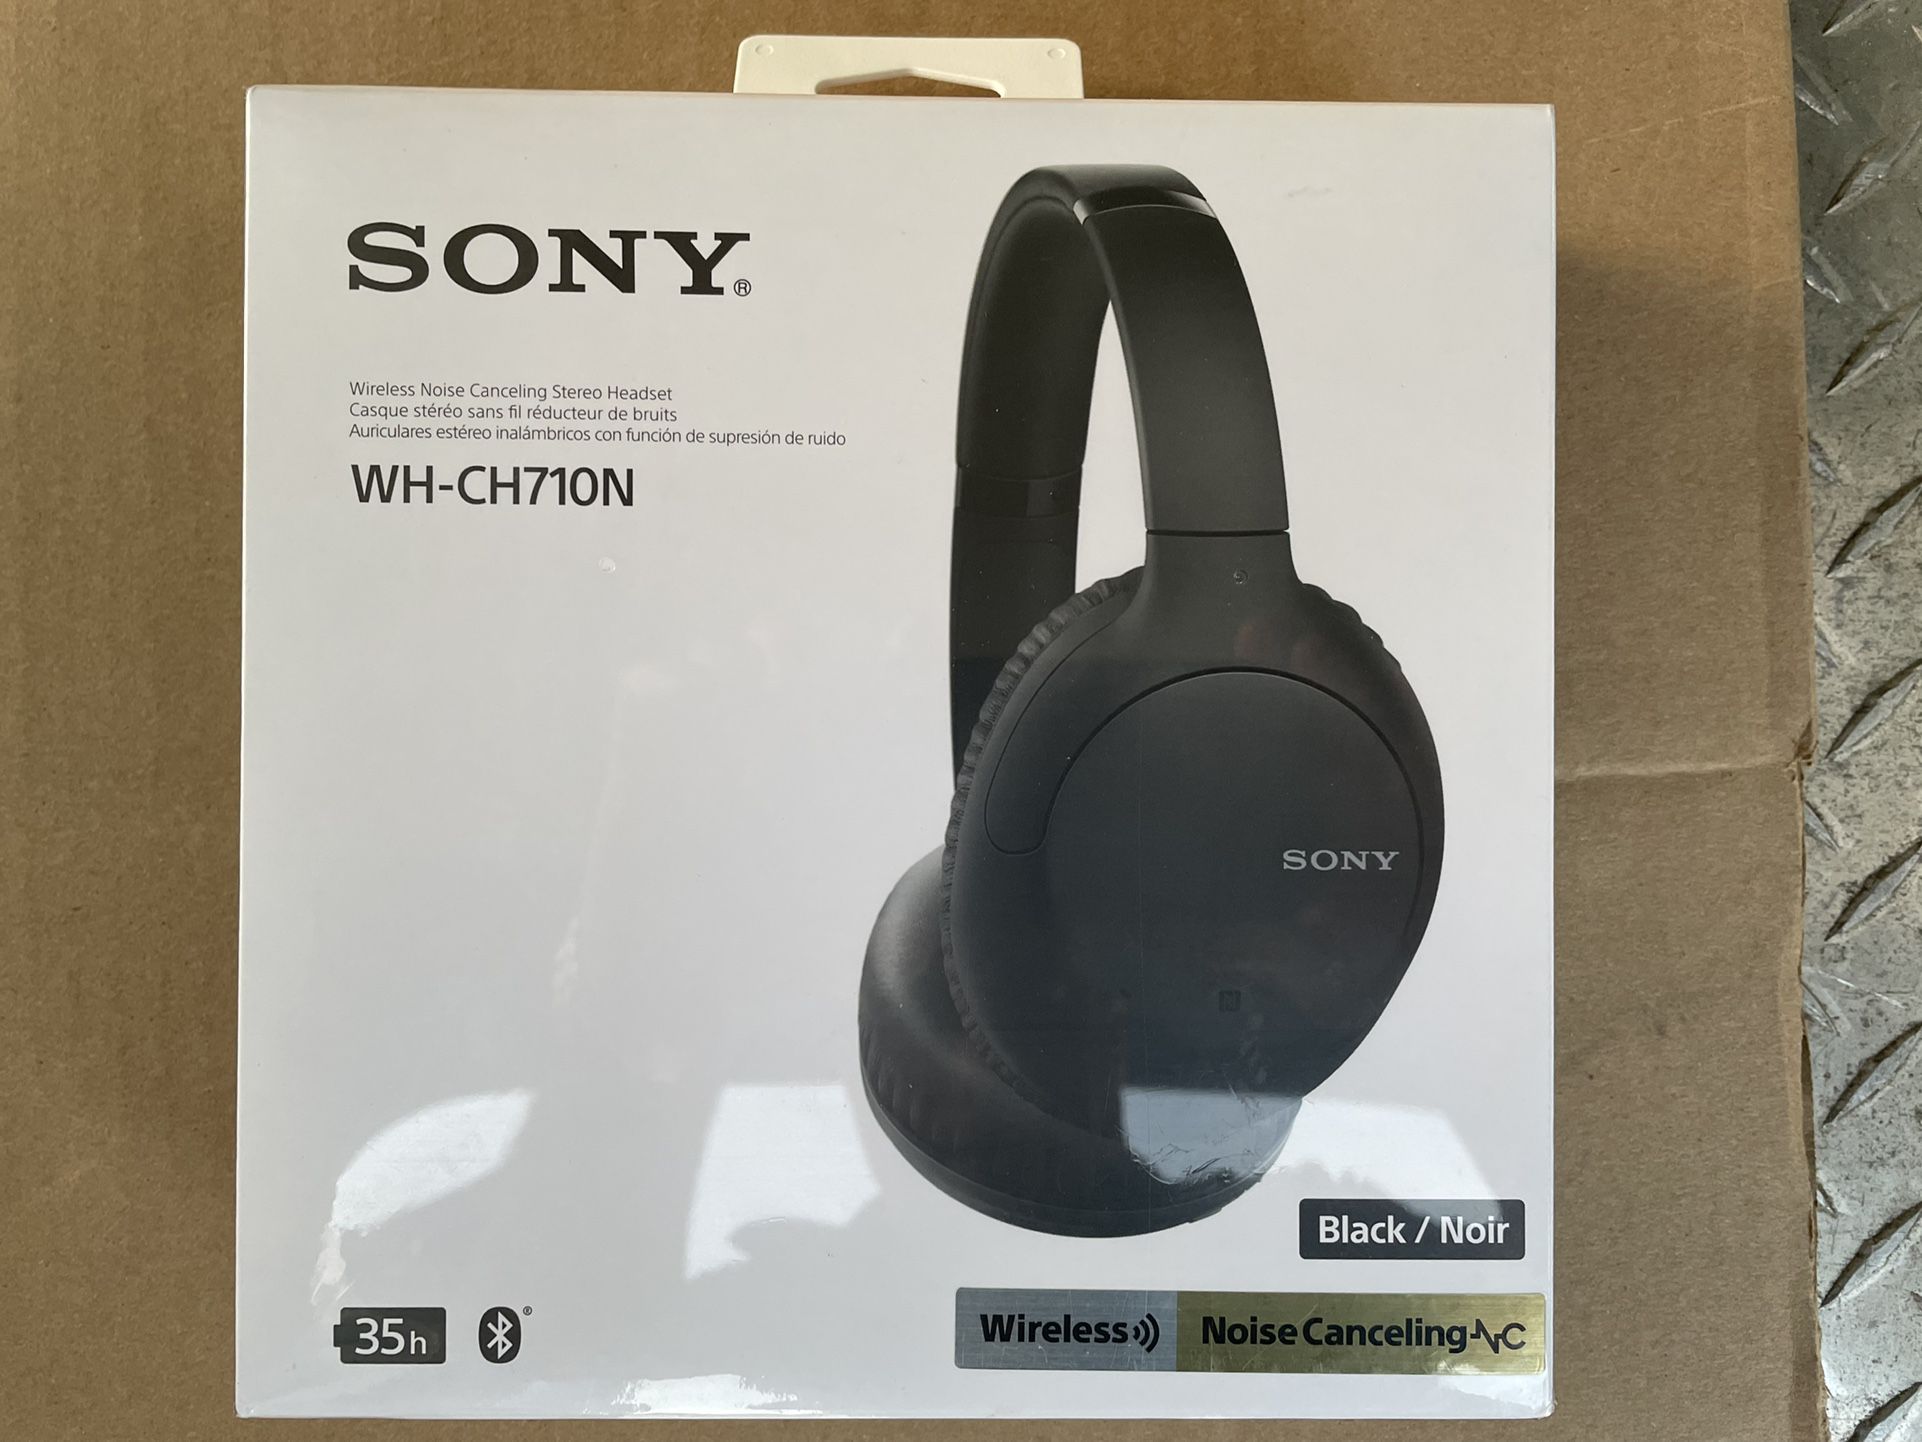 Sony Noise Canceling / Wireless Headset